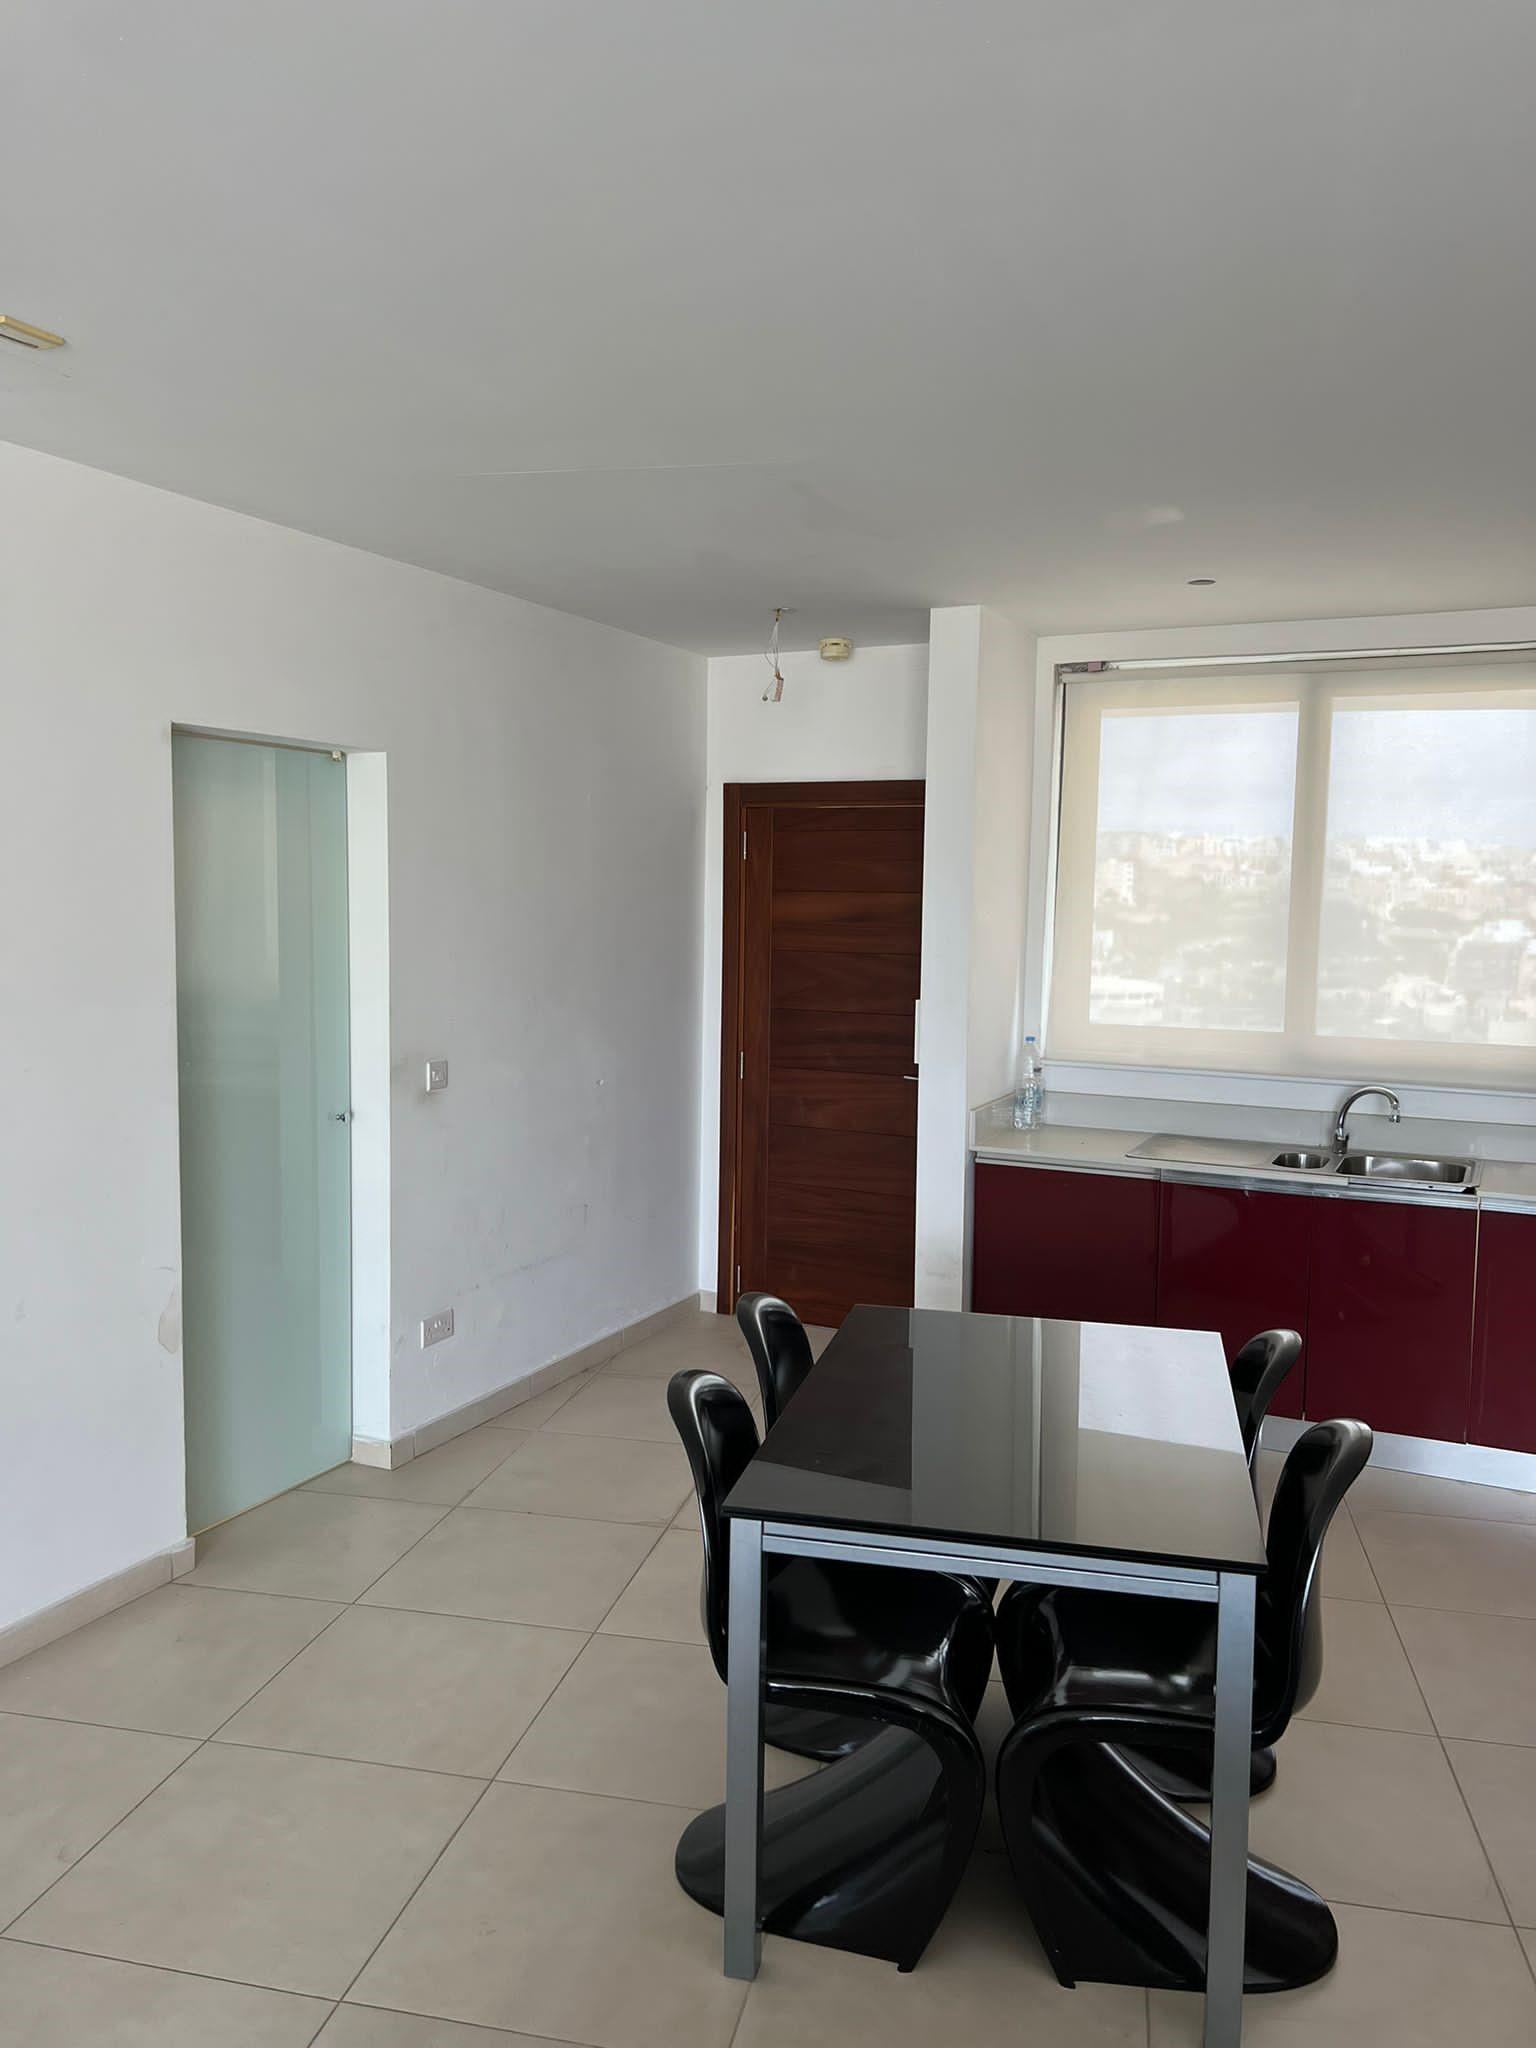 Portomaso Apartment - Ref No 006391 - Image 4